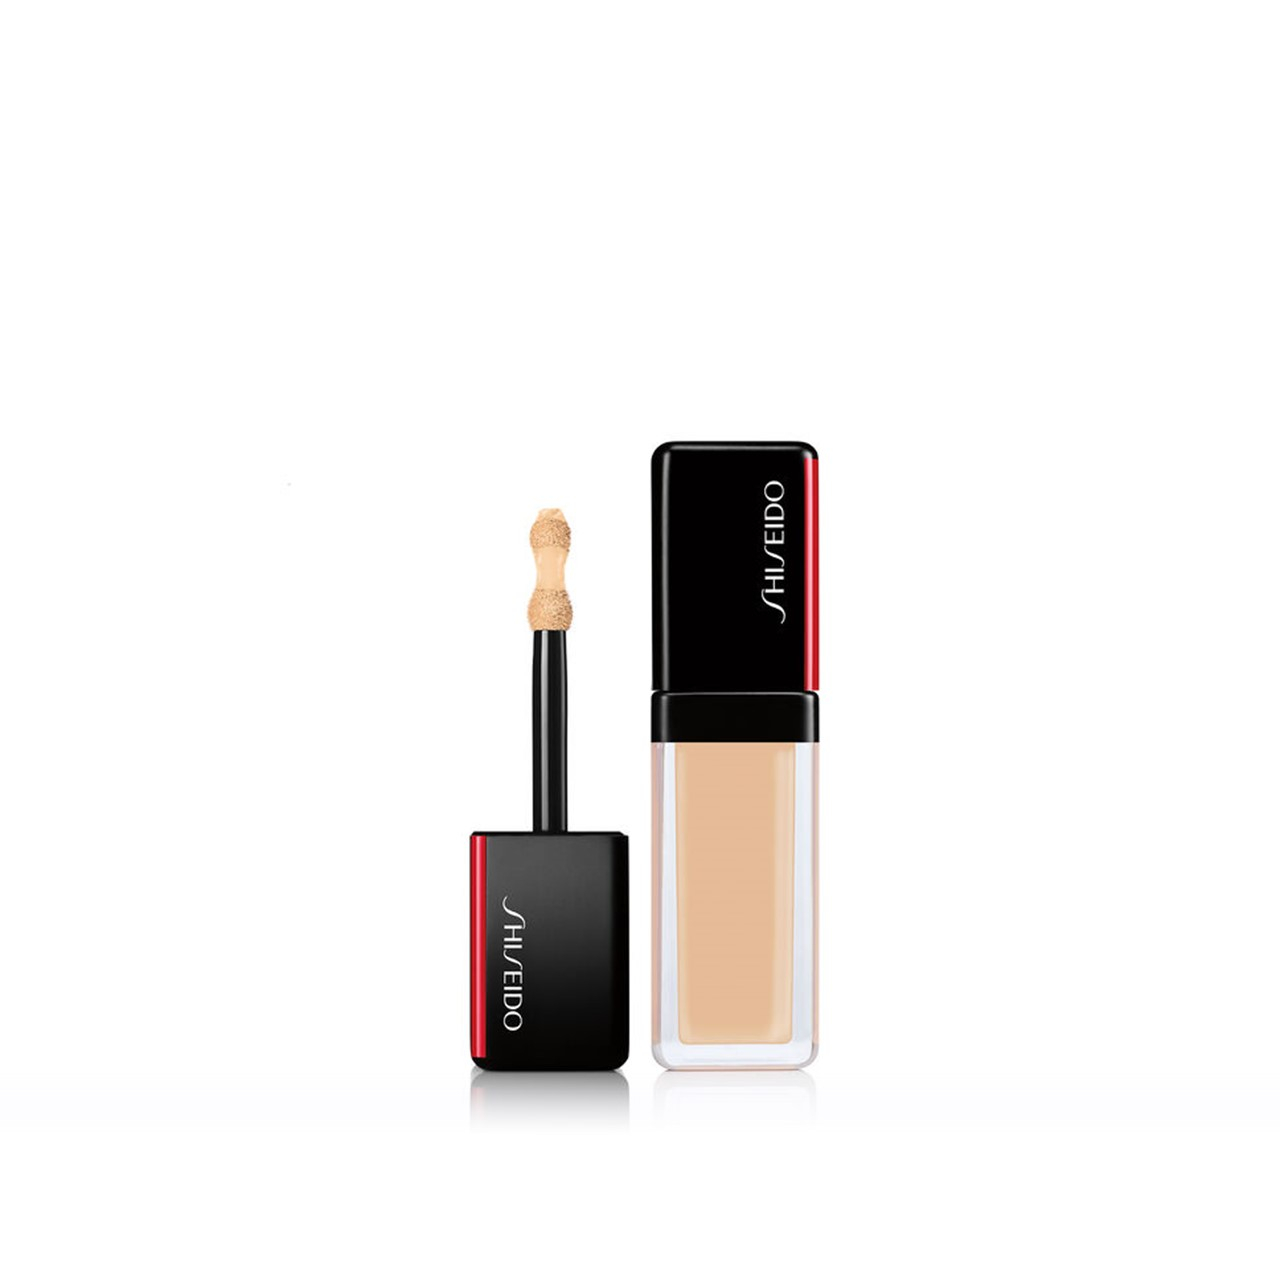 Shiseido Synchro Skin Self-Refreshing Concealer 202 Light 5.8ml (0.20fl oz)